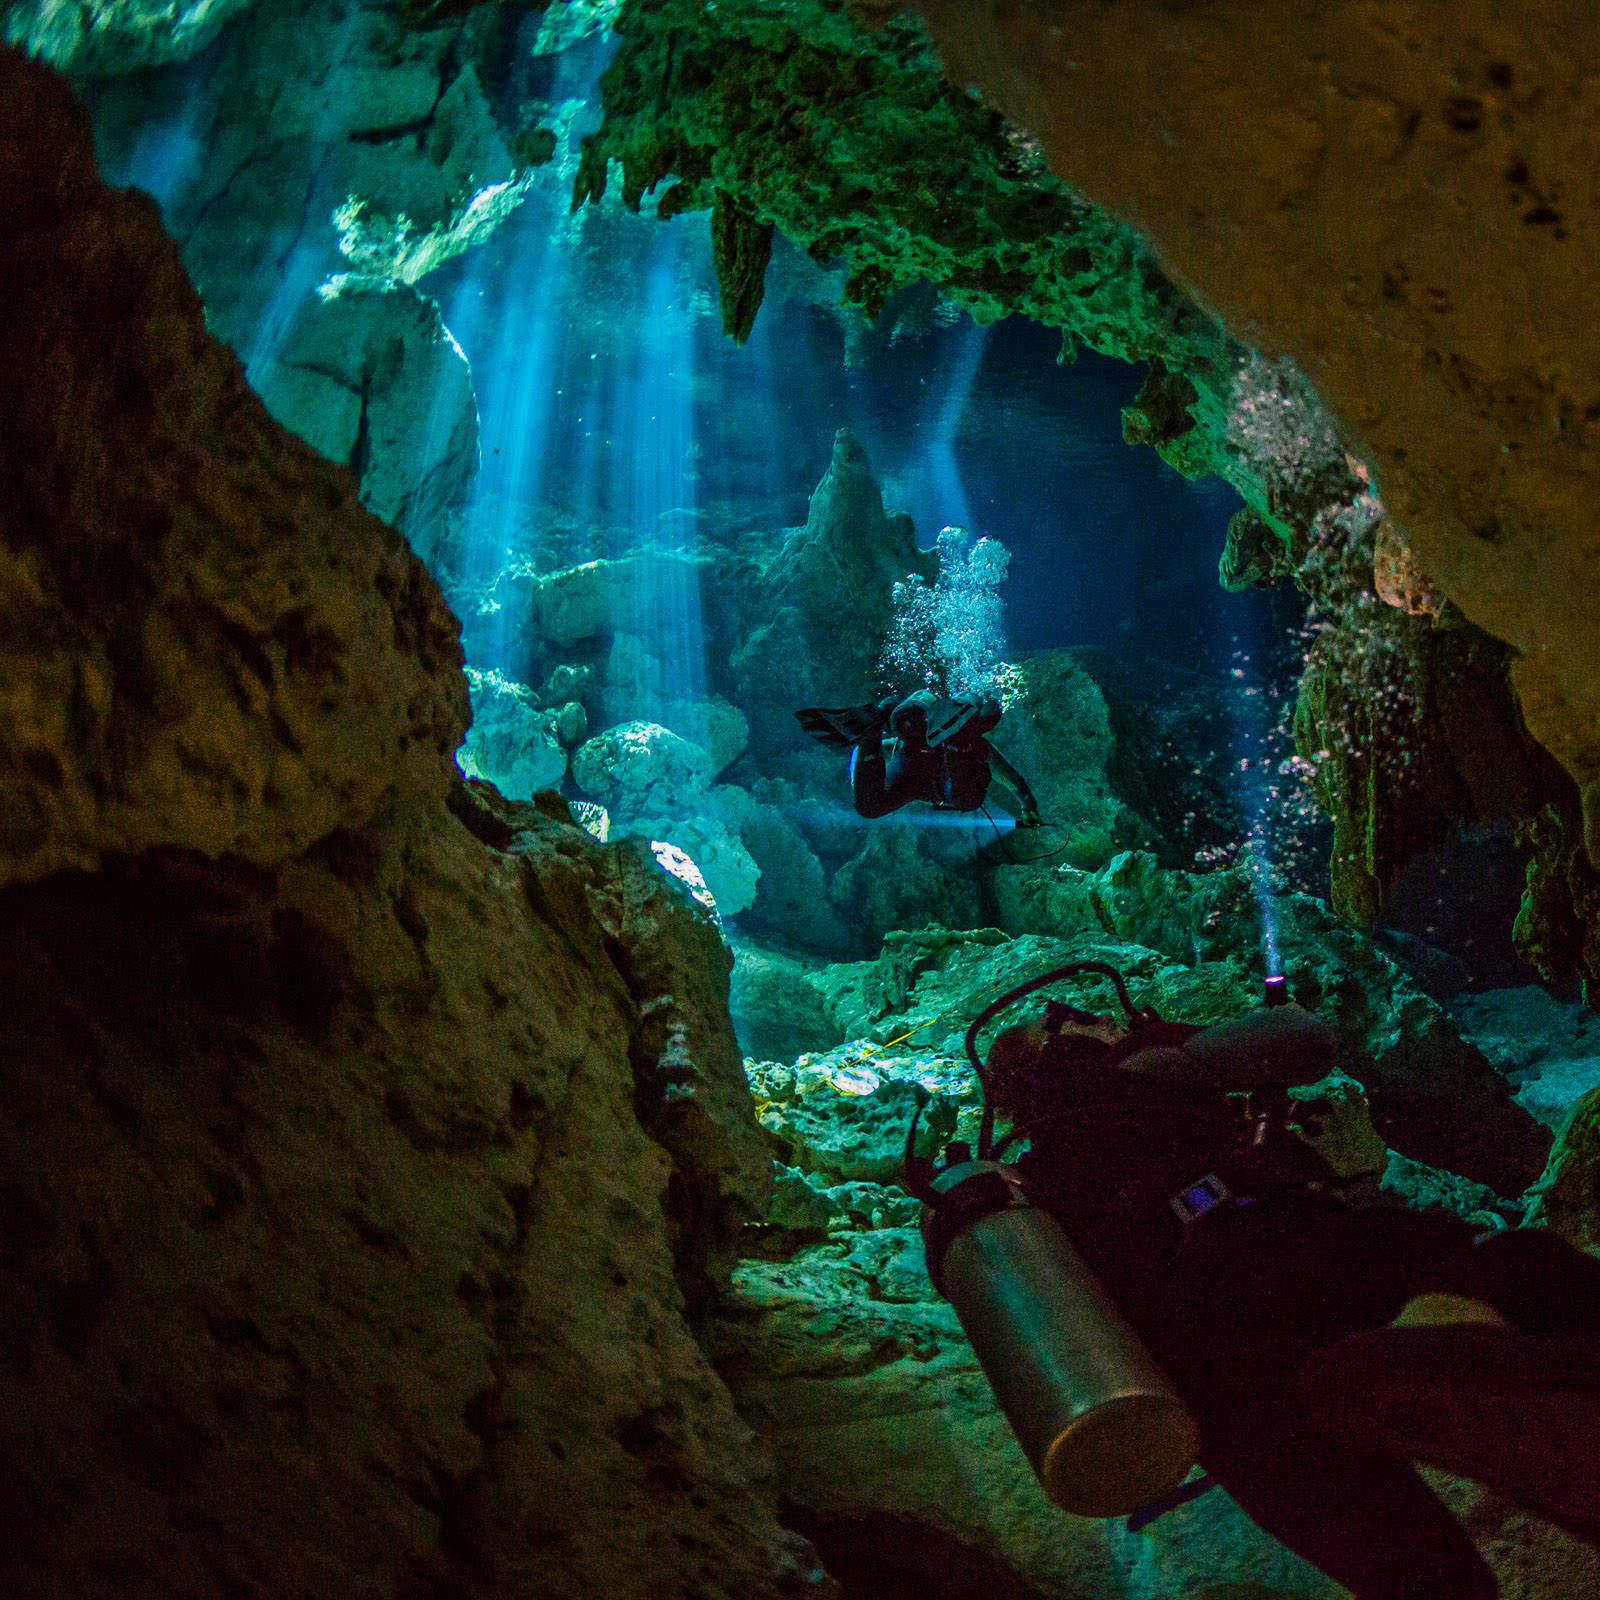 Вертикальная пещера затоплена водой можно найти уровень. Подводная пещера в Пермском крае Ординская. Кейв-дайвинг (пещерный дайвинг). Ординская пещера дайвинг. Мексика Сеноты дайвинг.